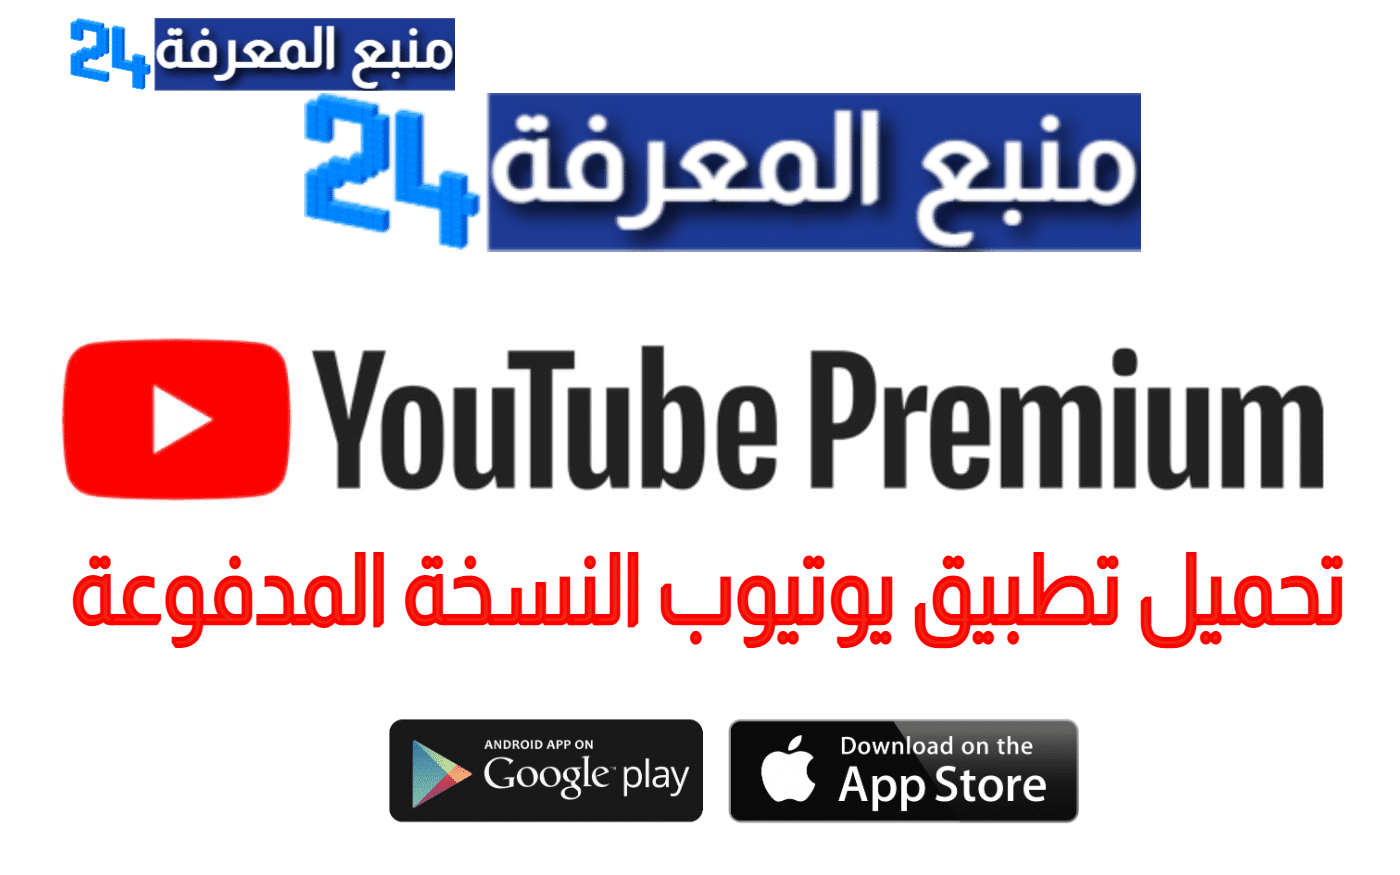 تحميل تطبيق يوتيوب النسخة المدفوعة YouTube Premium مجانا